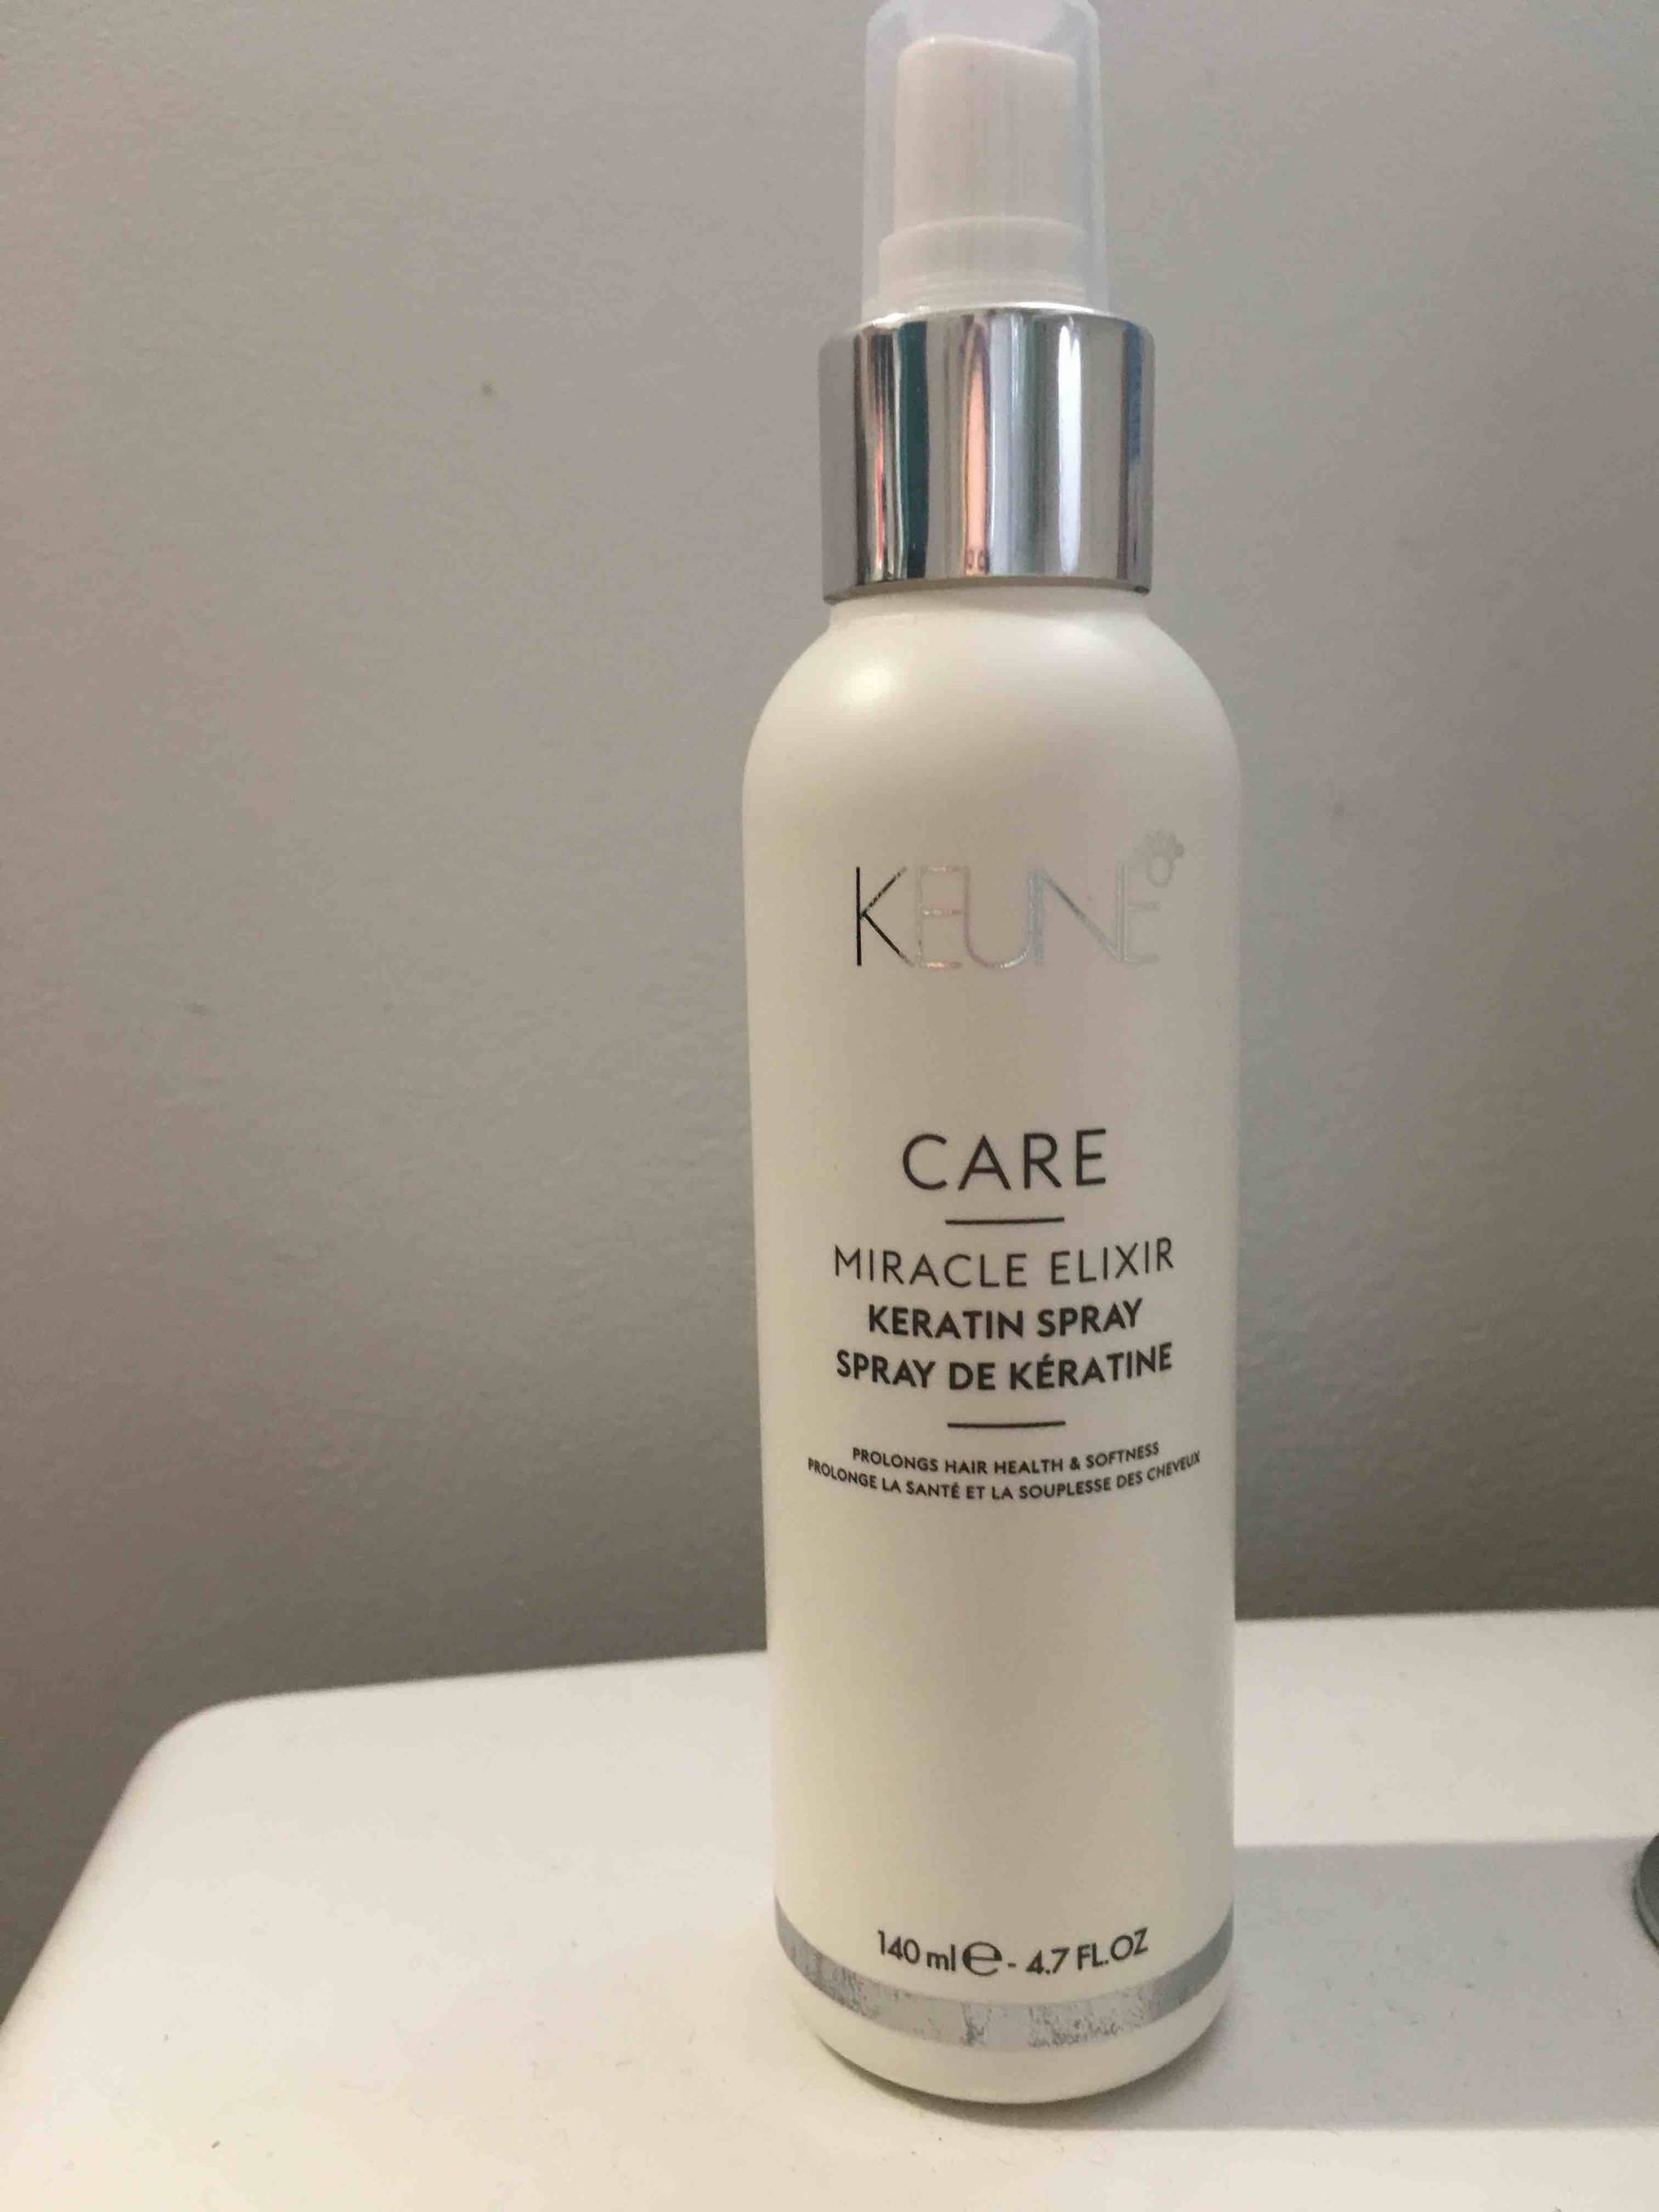 KEUNE - Care miracle elixir - Spray de kératine